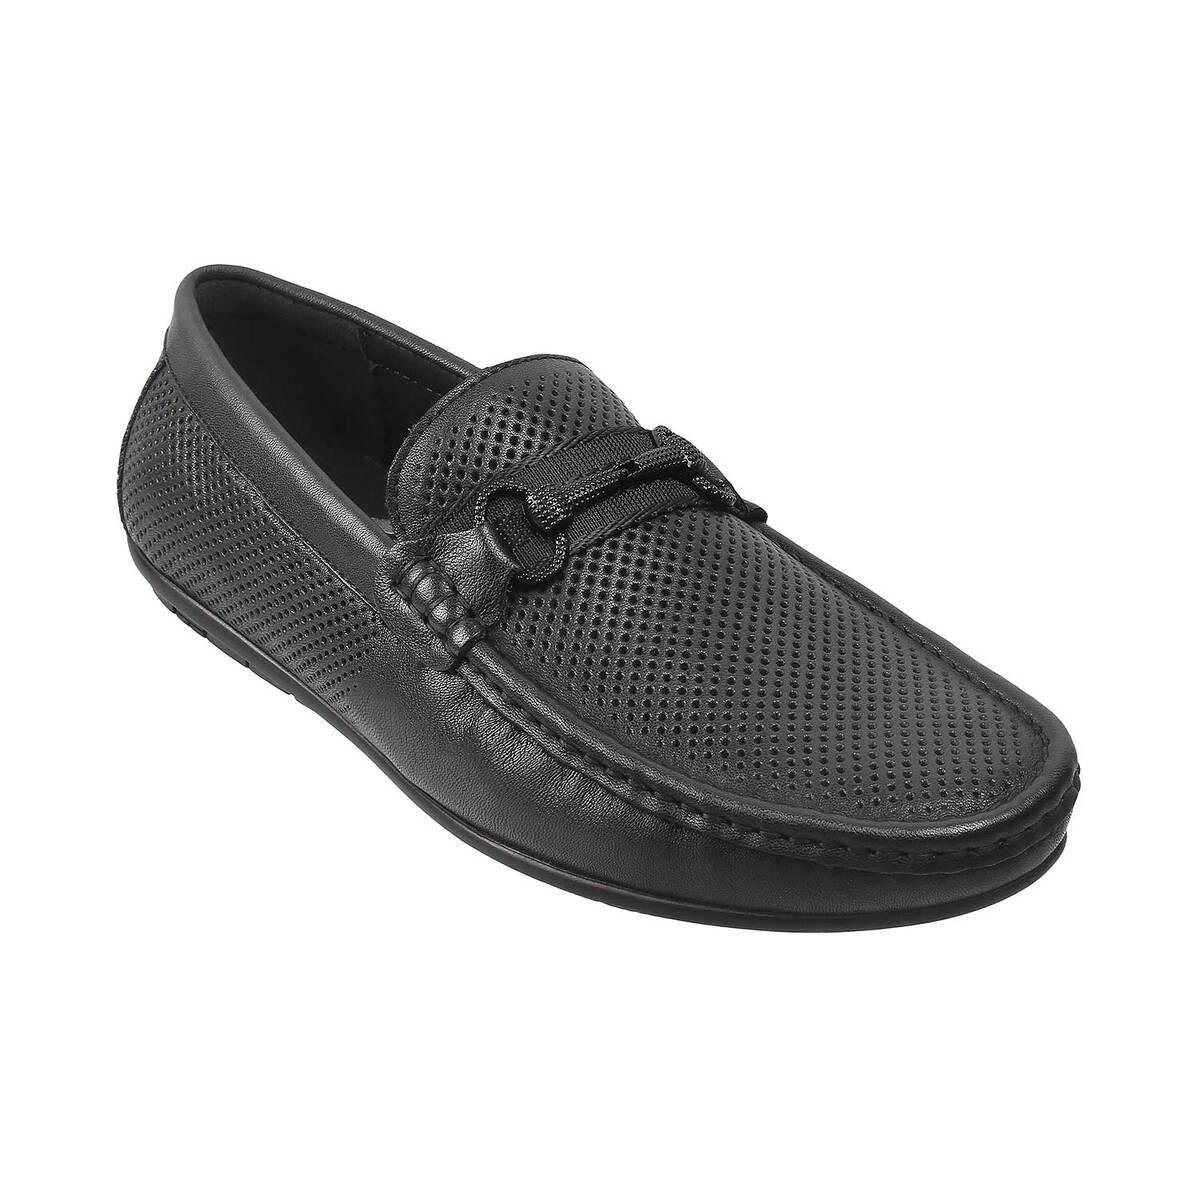 Black Patent Penny Loafer for Men Black Dress Shoes | Loafers men, Mens  black dress shoes, Black dress shoes